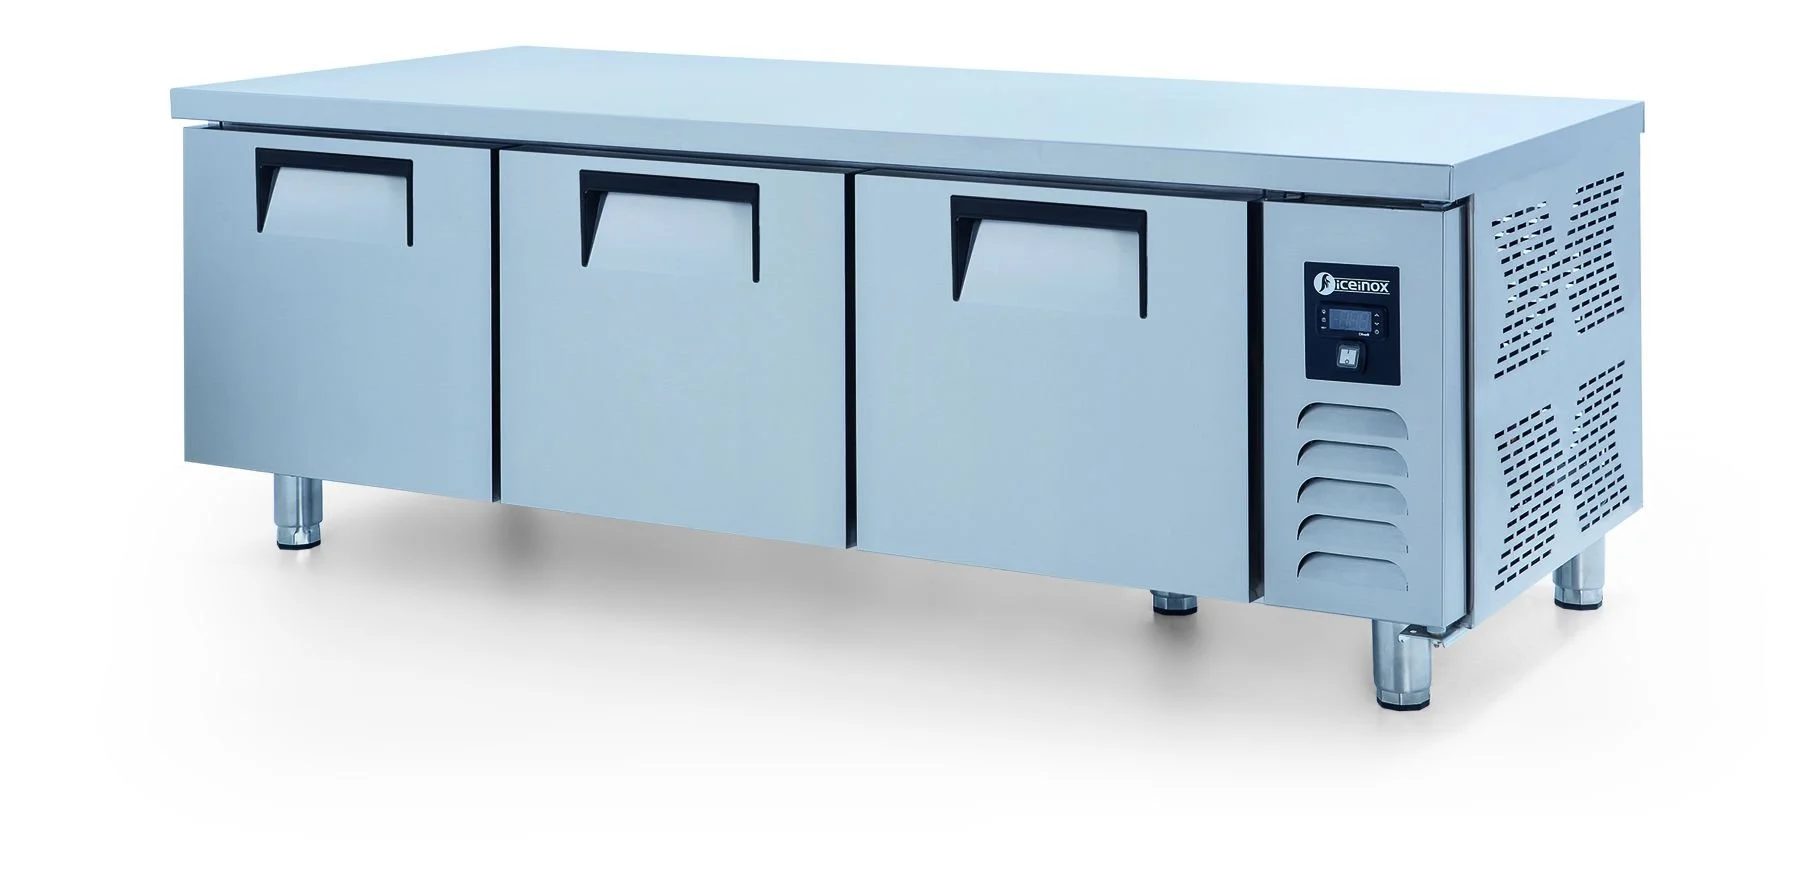 ICEINOX - Iceinox UTN 330 CR Kısa Model Pişirici Altı Buzdolabı, 3 Kapılı, 330 L